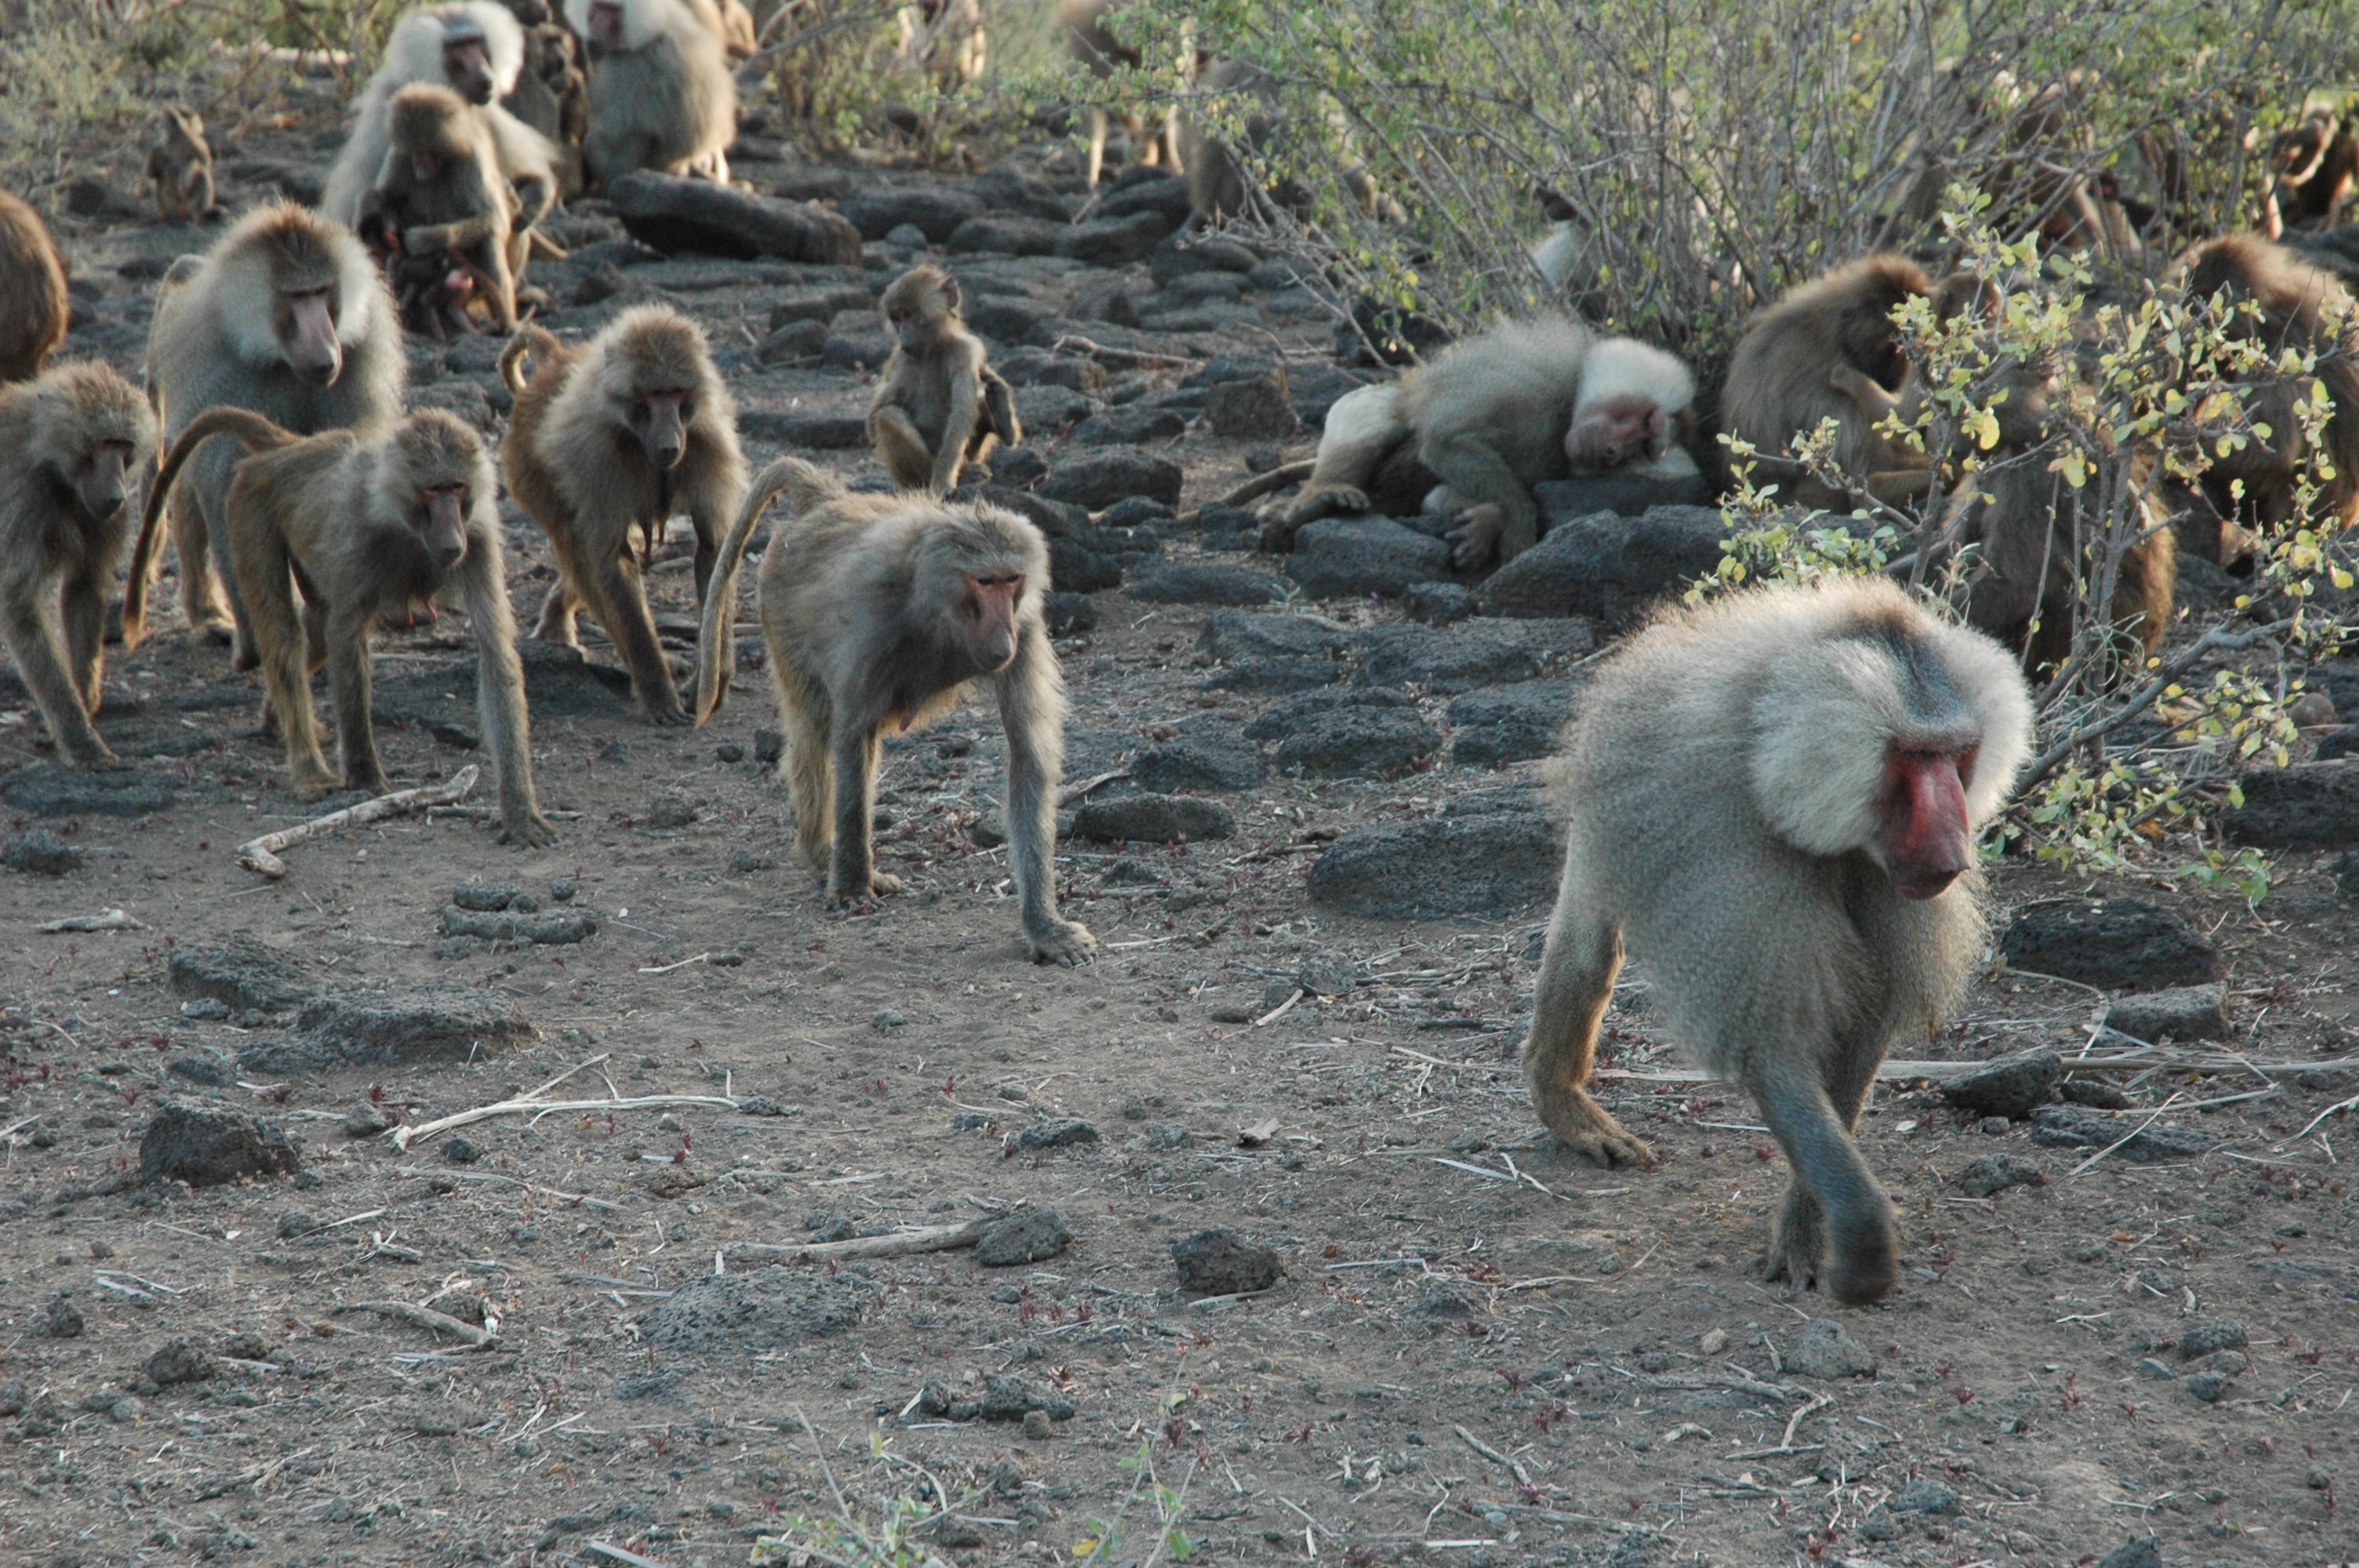 Hamadryas baboons traveling